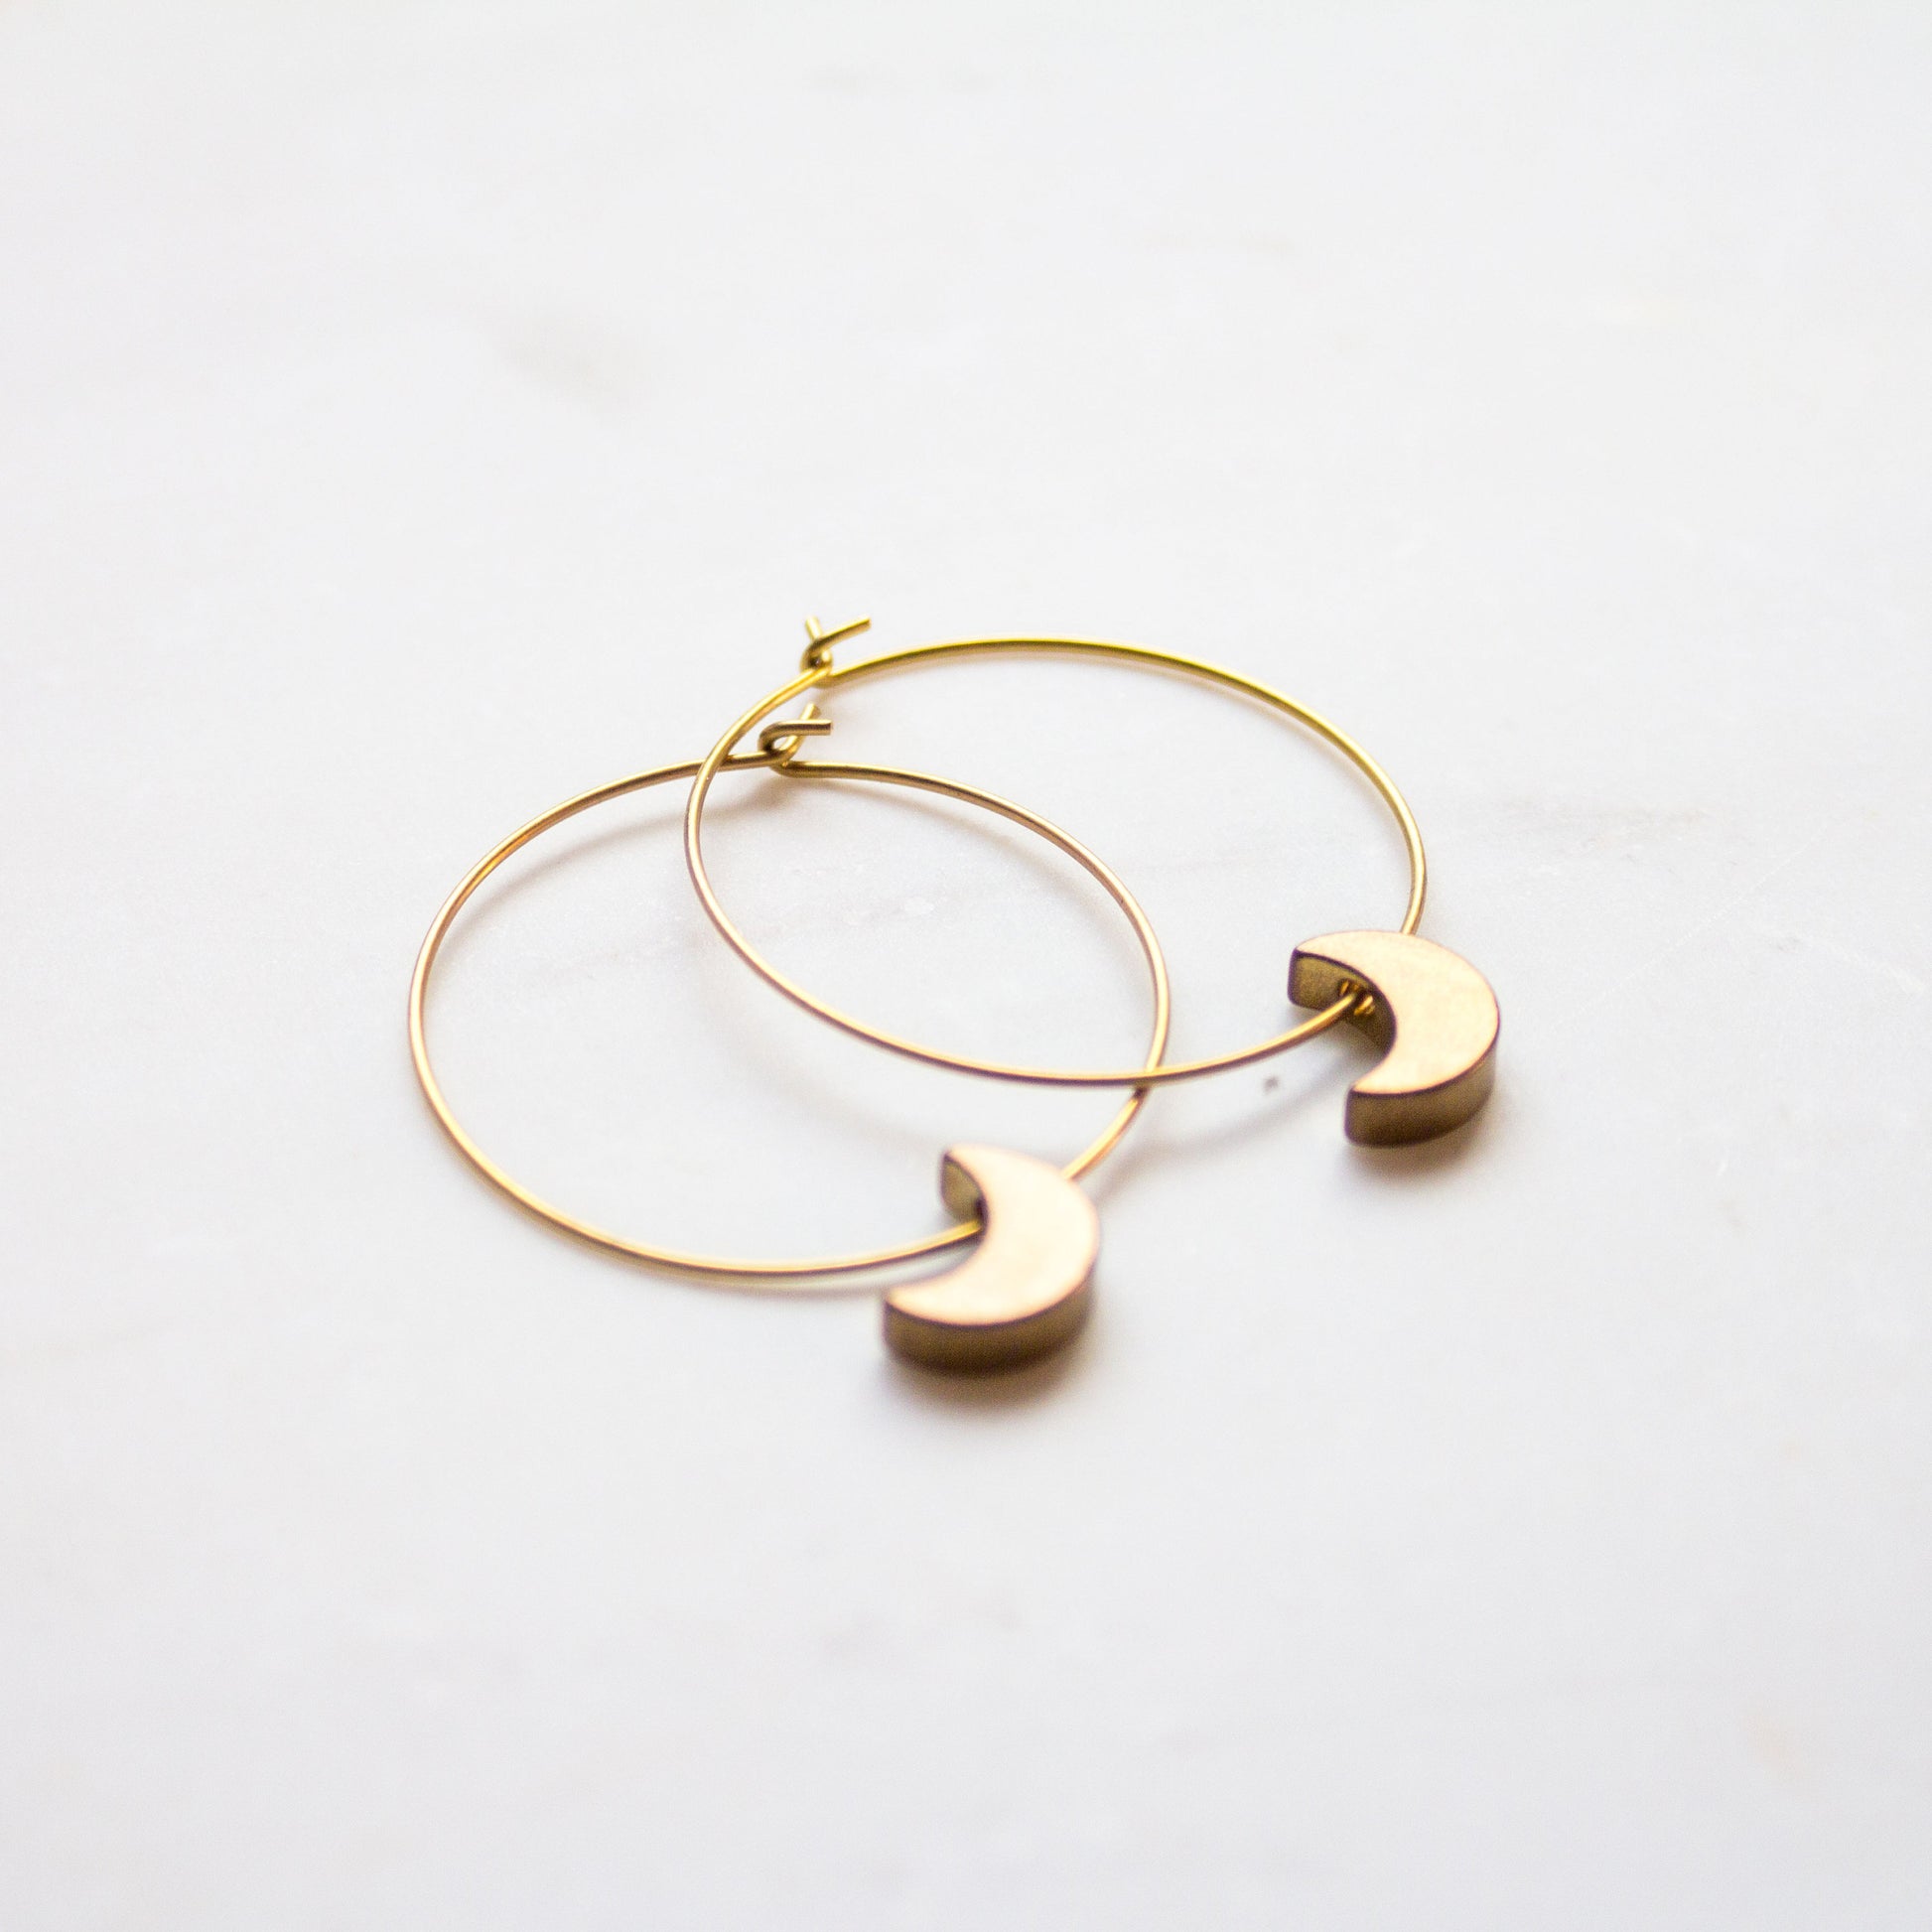 Crescent Moon Hoop Earrings, Celestial jewelry, gold earrings, moon jewelry